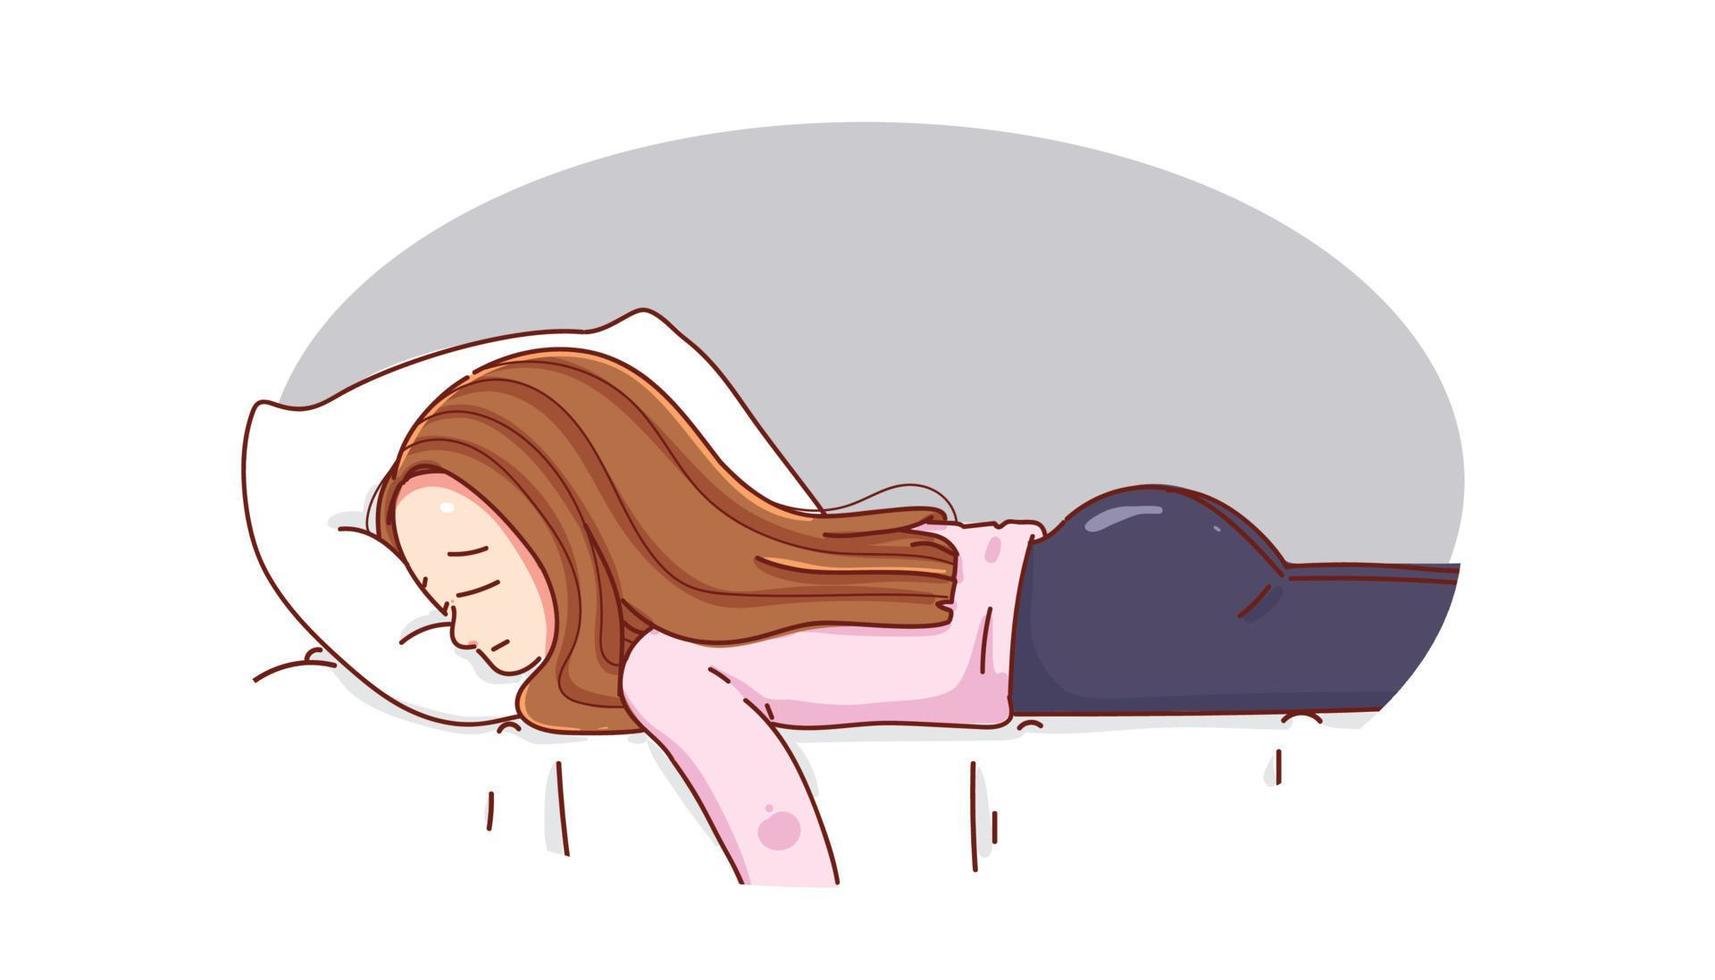 jonge vrouw die in bed valt en zich verdrietig voelt, moe en bezorgd lijdt aan depressie cartoon handgetekende cartoon kunst illustratie vector